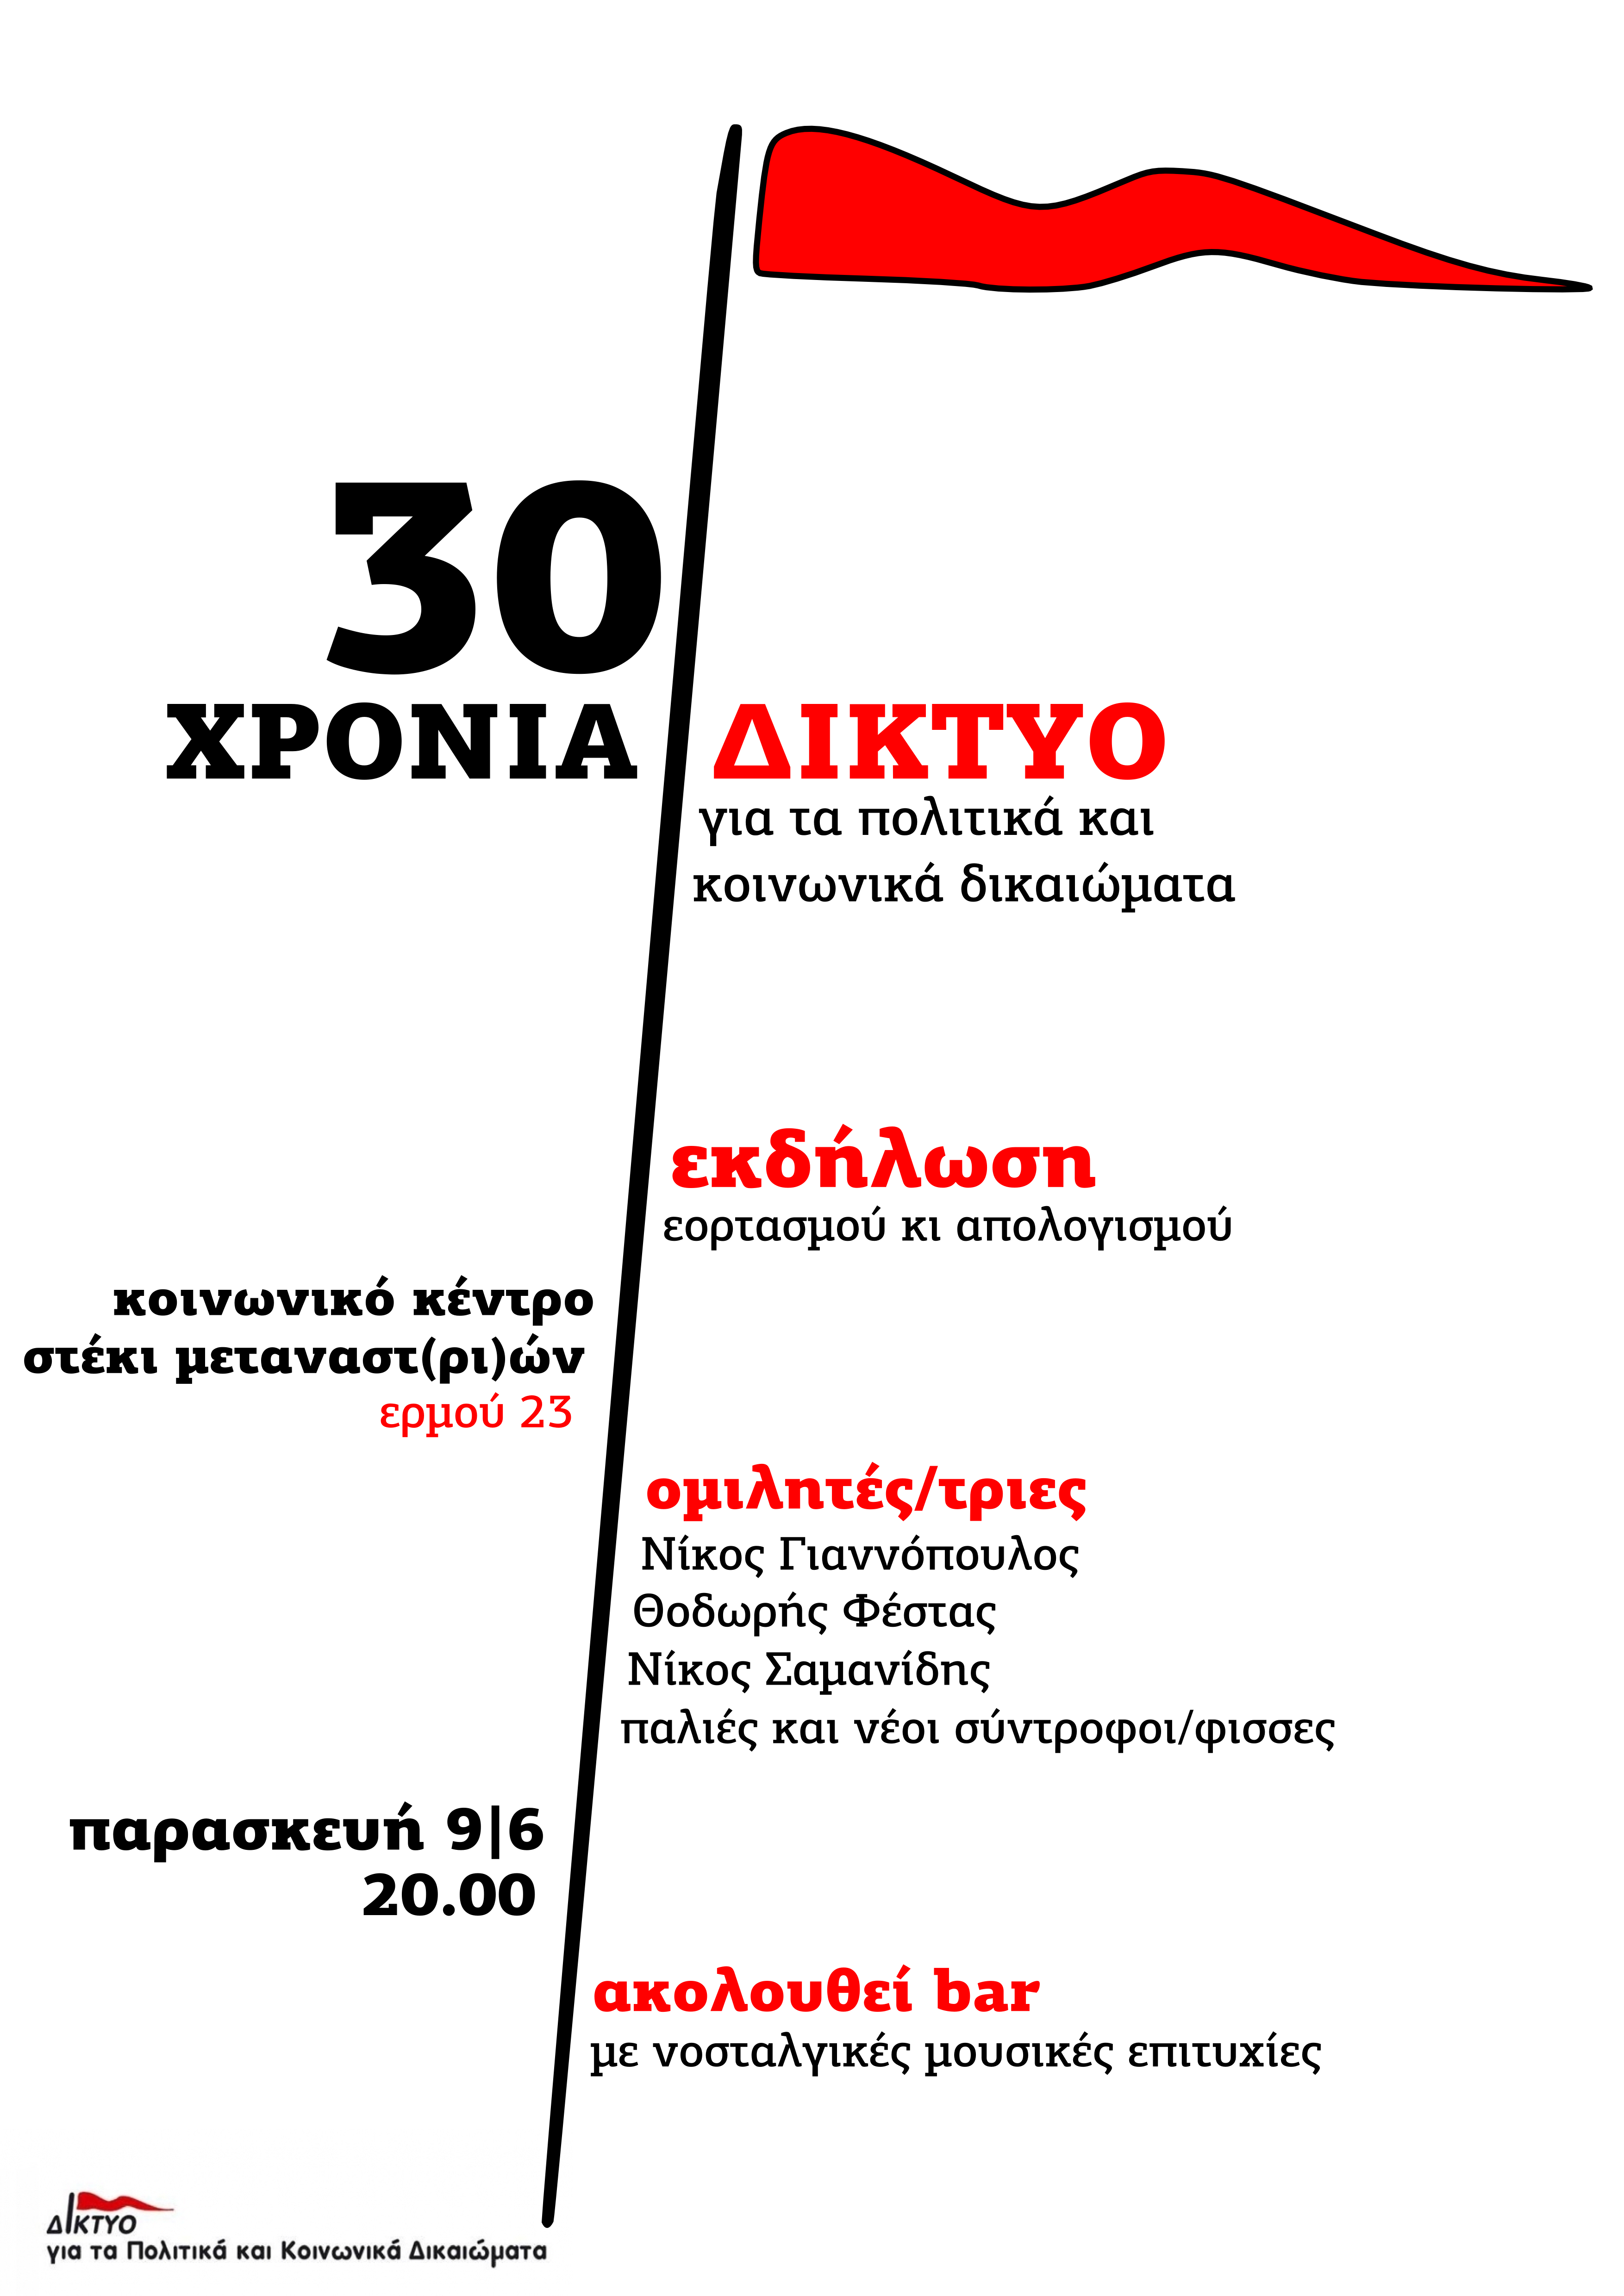 Τα 30 χρόνια Δικτύου για Πολιτικά και Κοινωνικά Δικαιώματα θα γιορταστούν και στη Θεσσαλονίκη